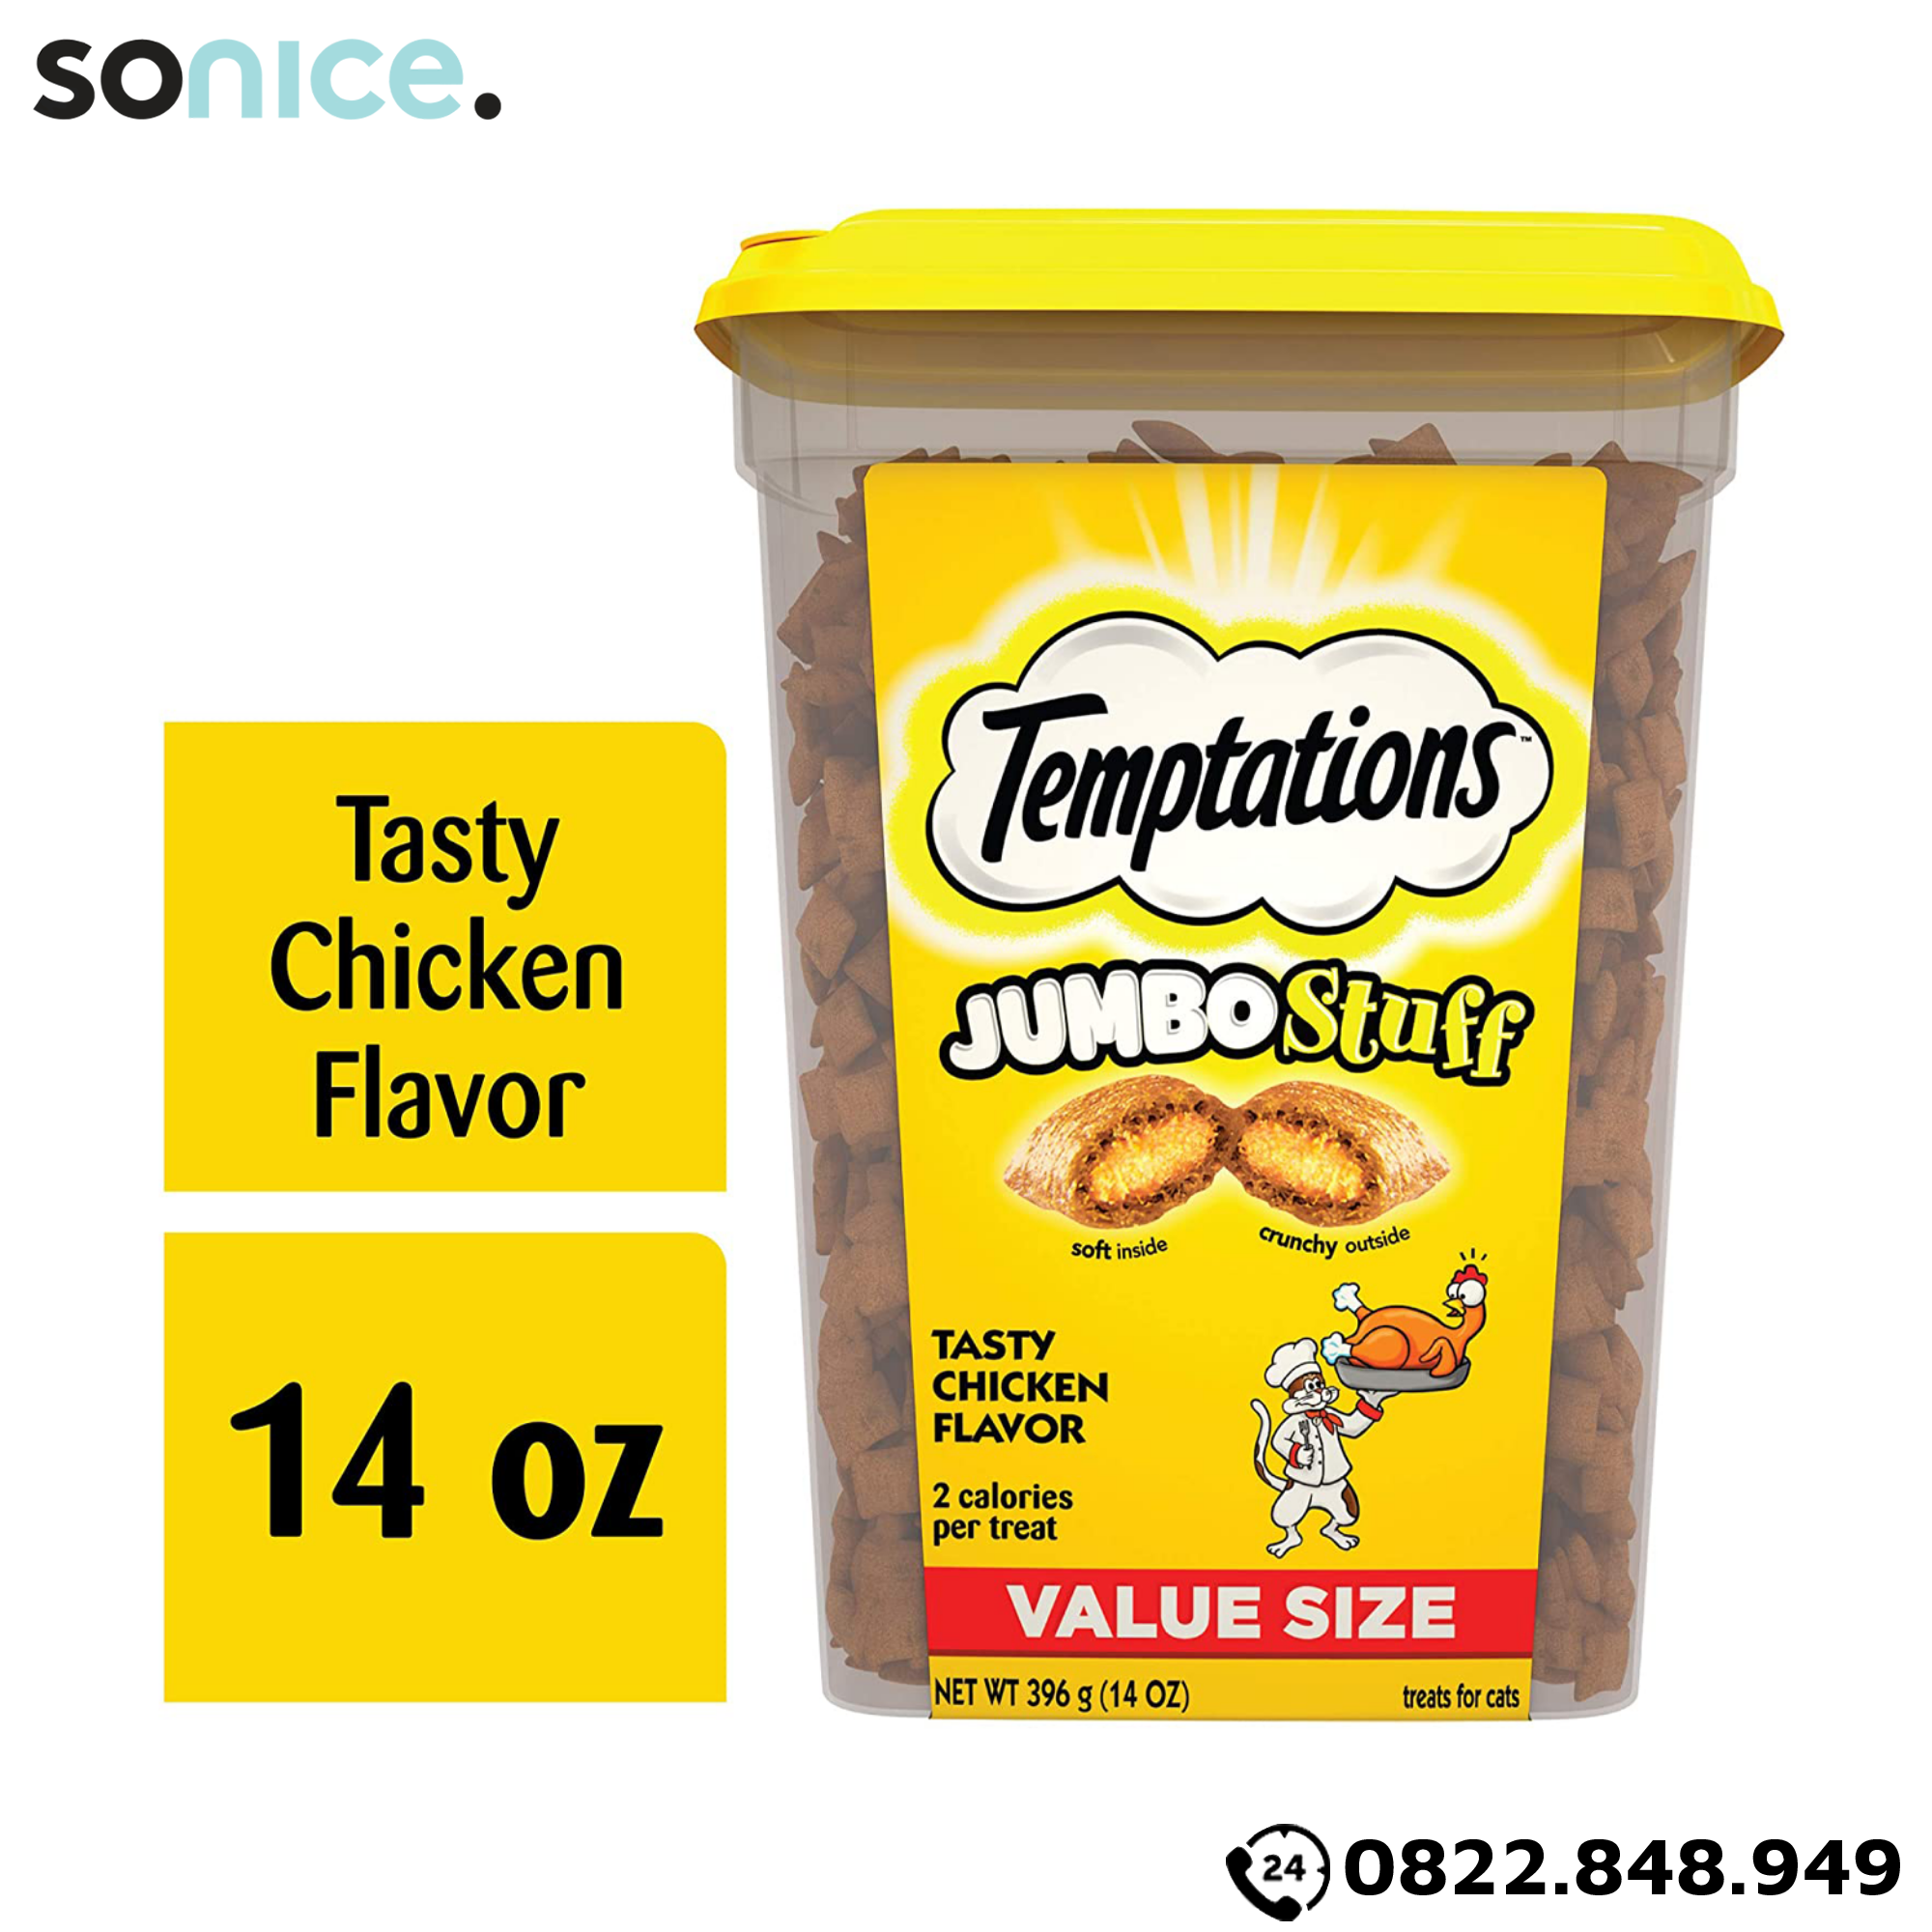  Treats mèo Temptations Jumbo Stuff Chicken 396g - Thịt gà cat treats SONICE. 